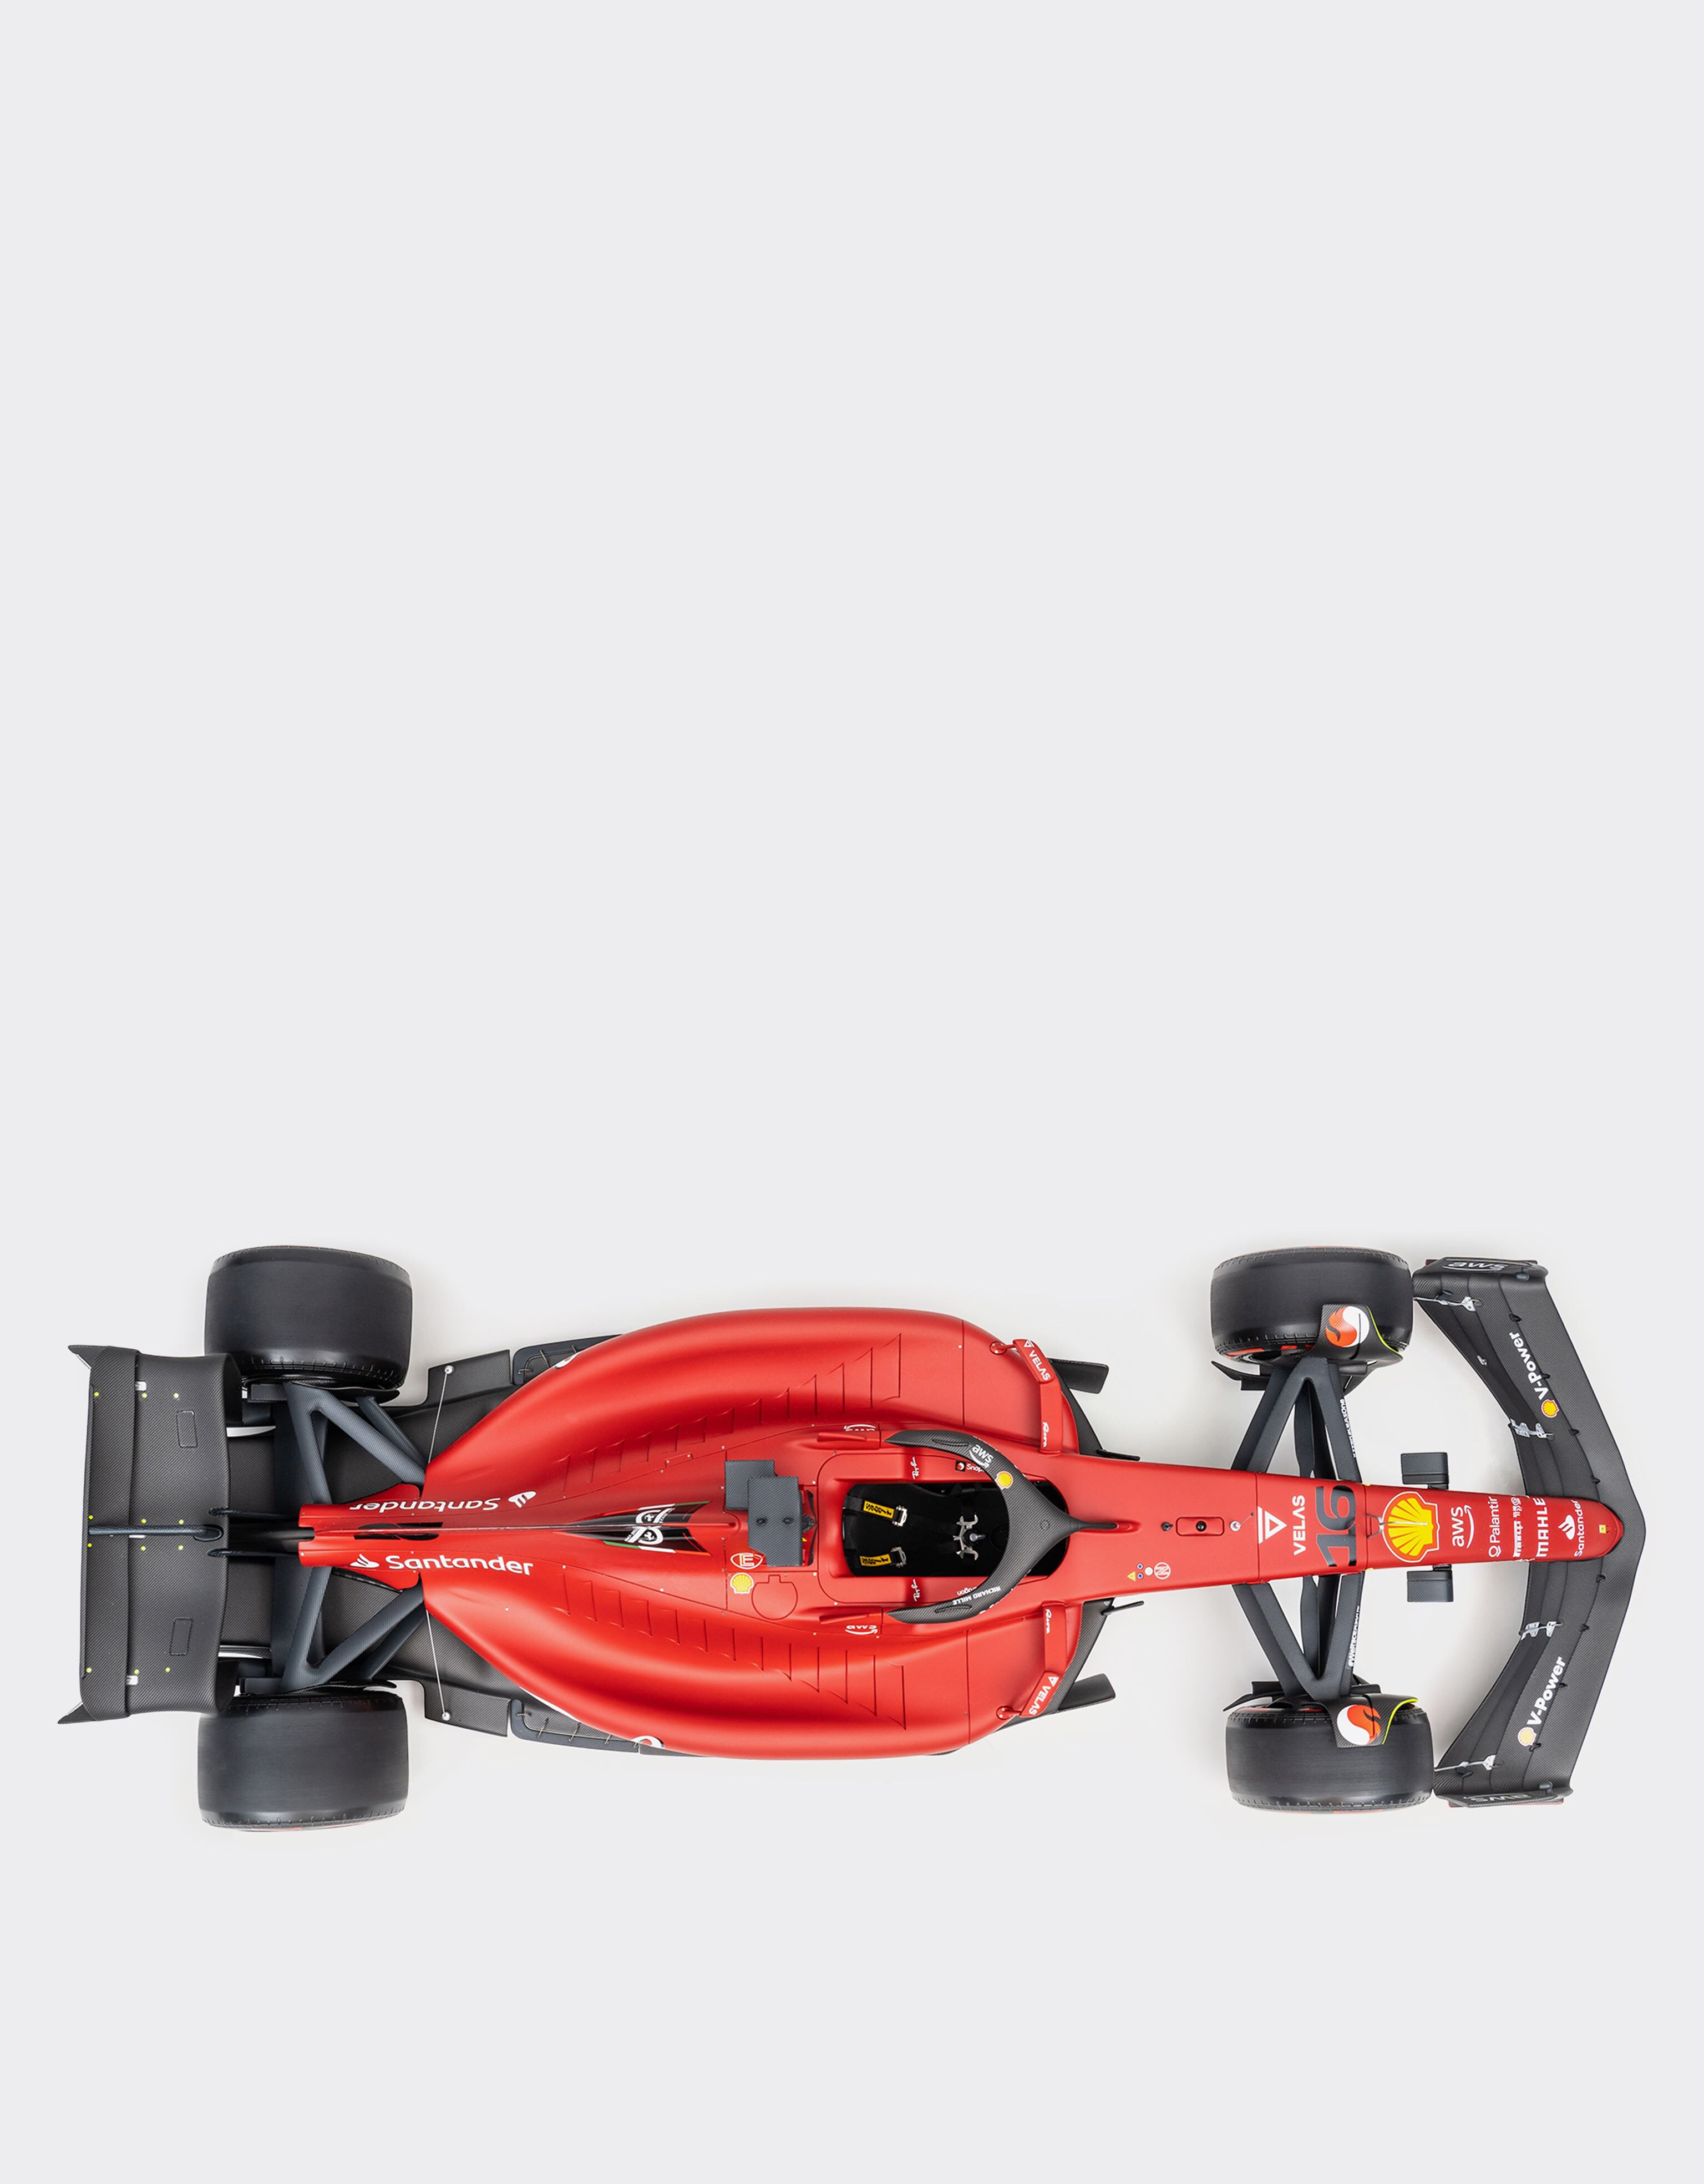 Ferrari 1:8 Charles Leclerc 法拉利 F1-75 模型车 红色 F0665f